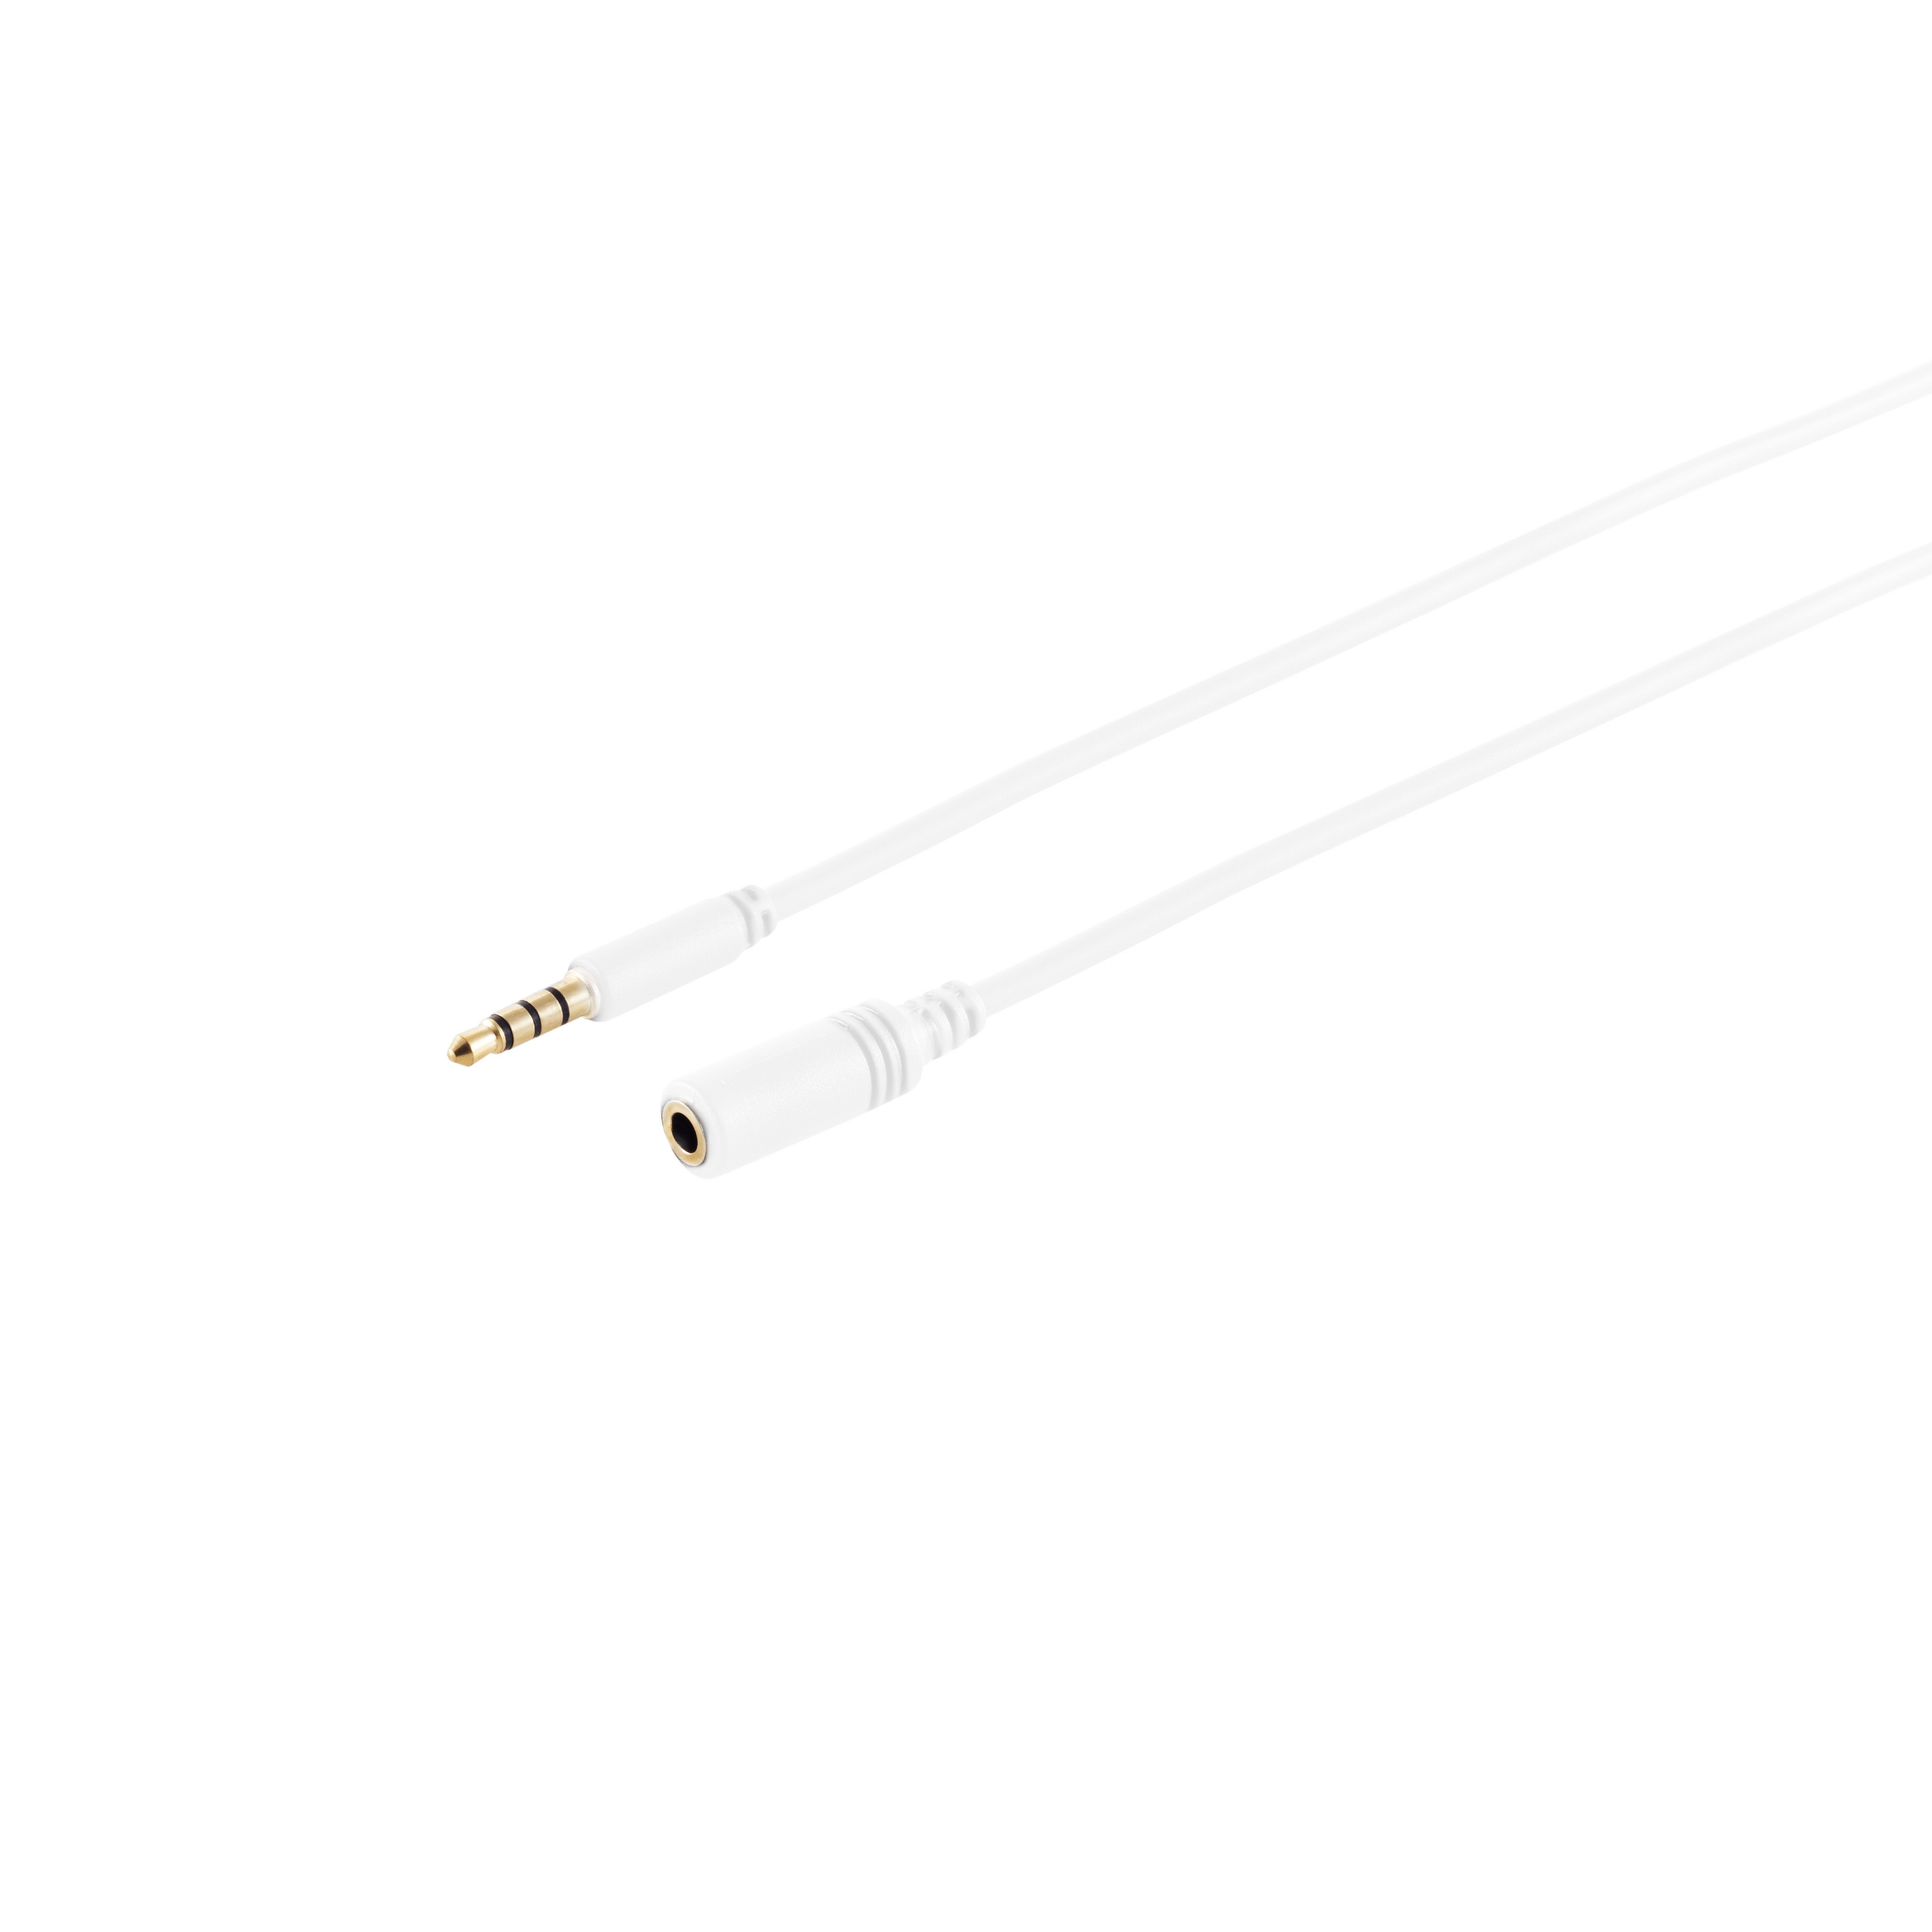 KABELBUDE 4-pol, 3,5mm m Stecker/Buchse, verg. 0,5m, Klinkenverlängerung, 0,50 weiß